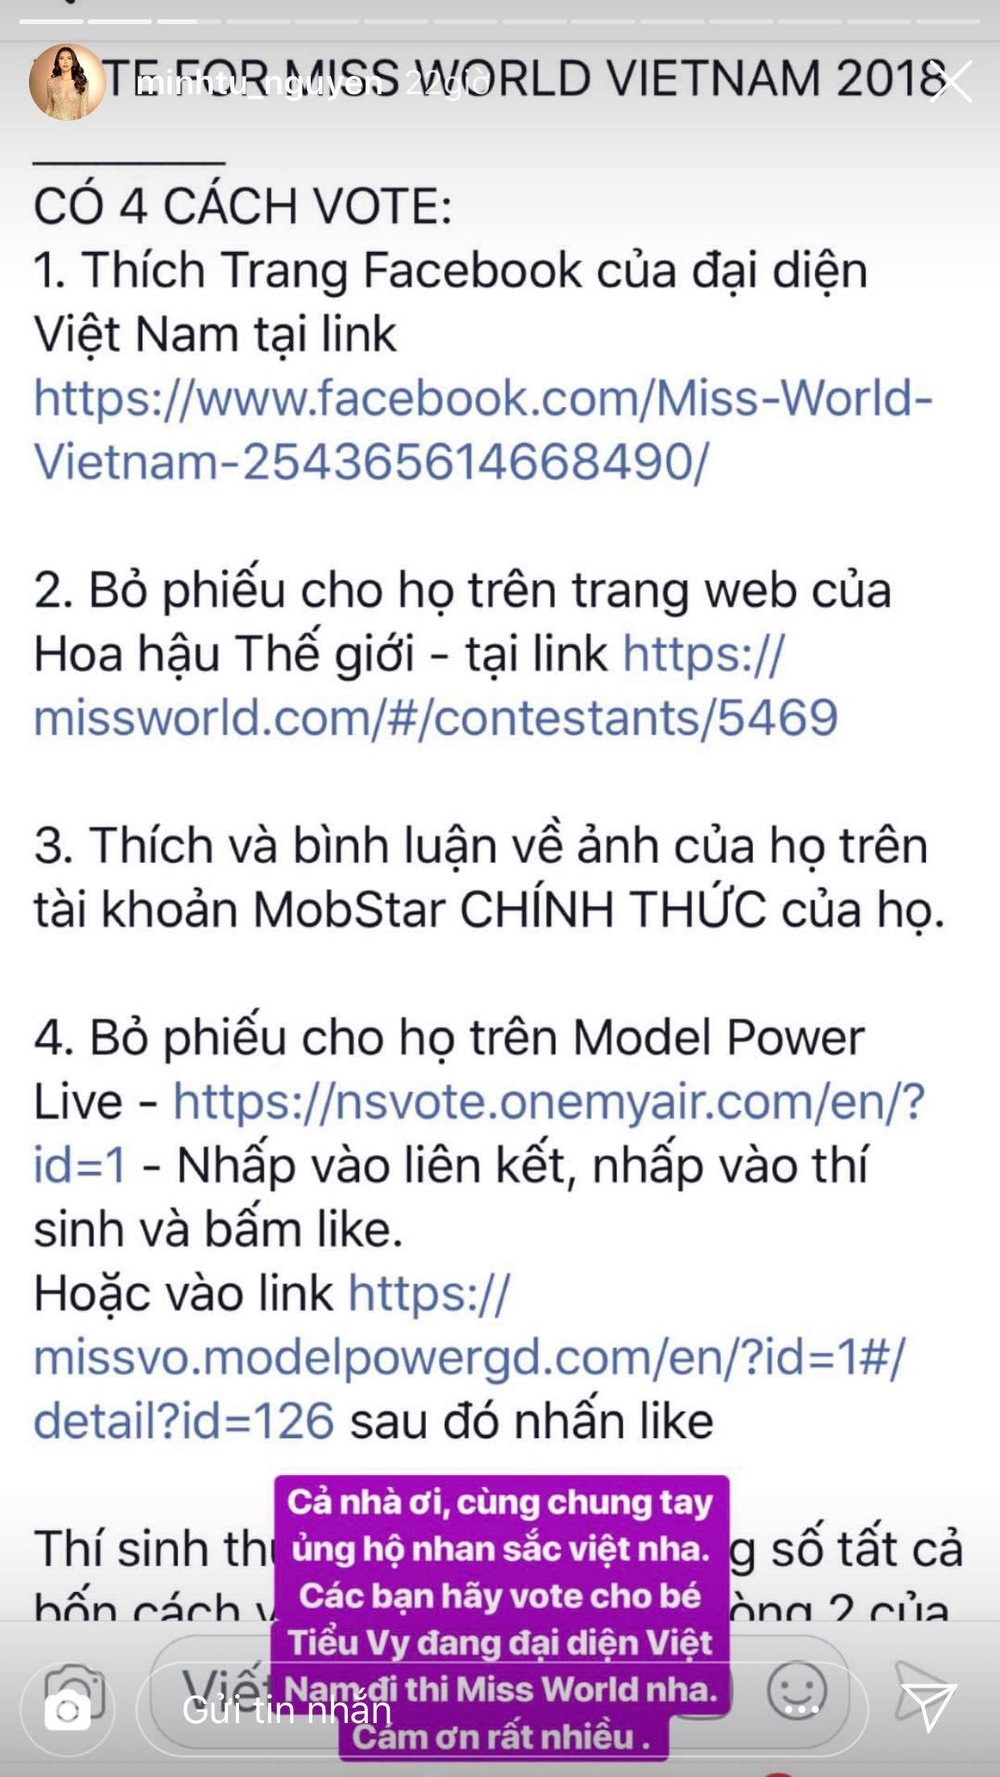 
Story được Minh Tú đăng tải kêu gọi mọi người ủng hộ cho Trần Tiểu Vy tại Miss World 2018.